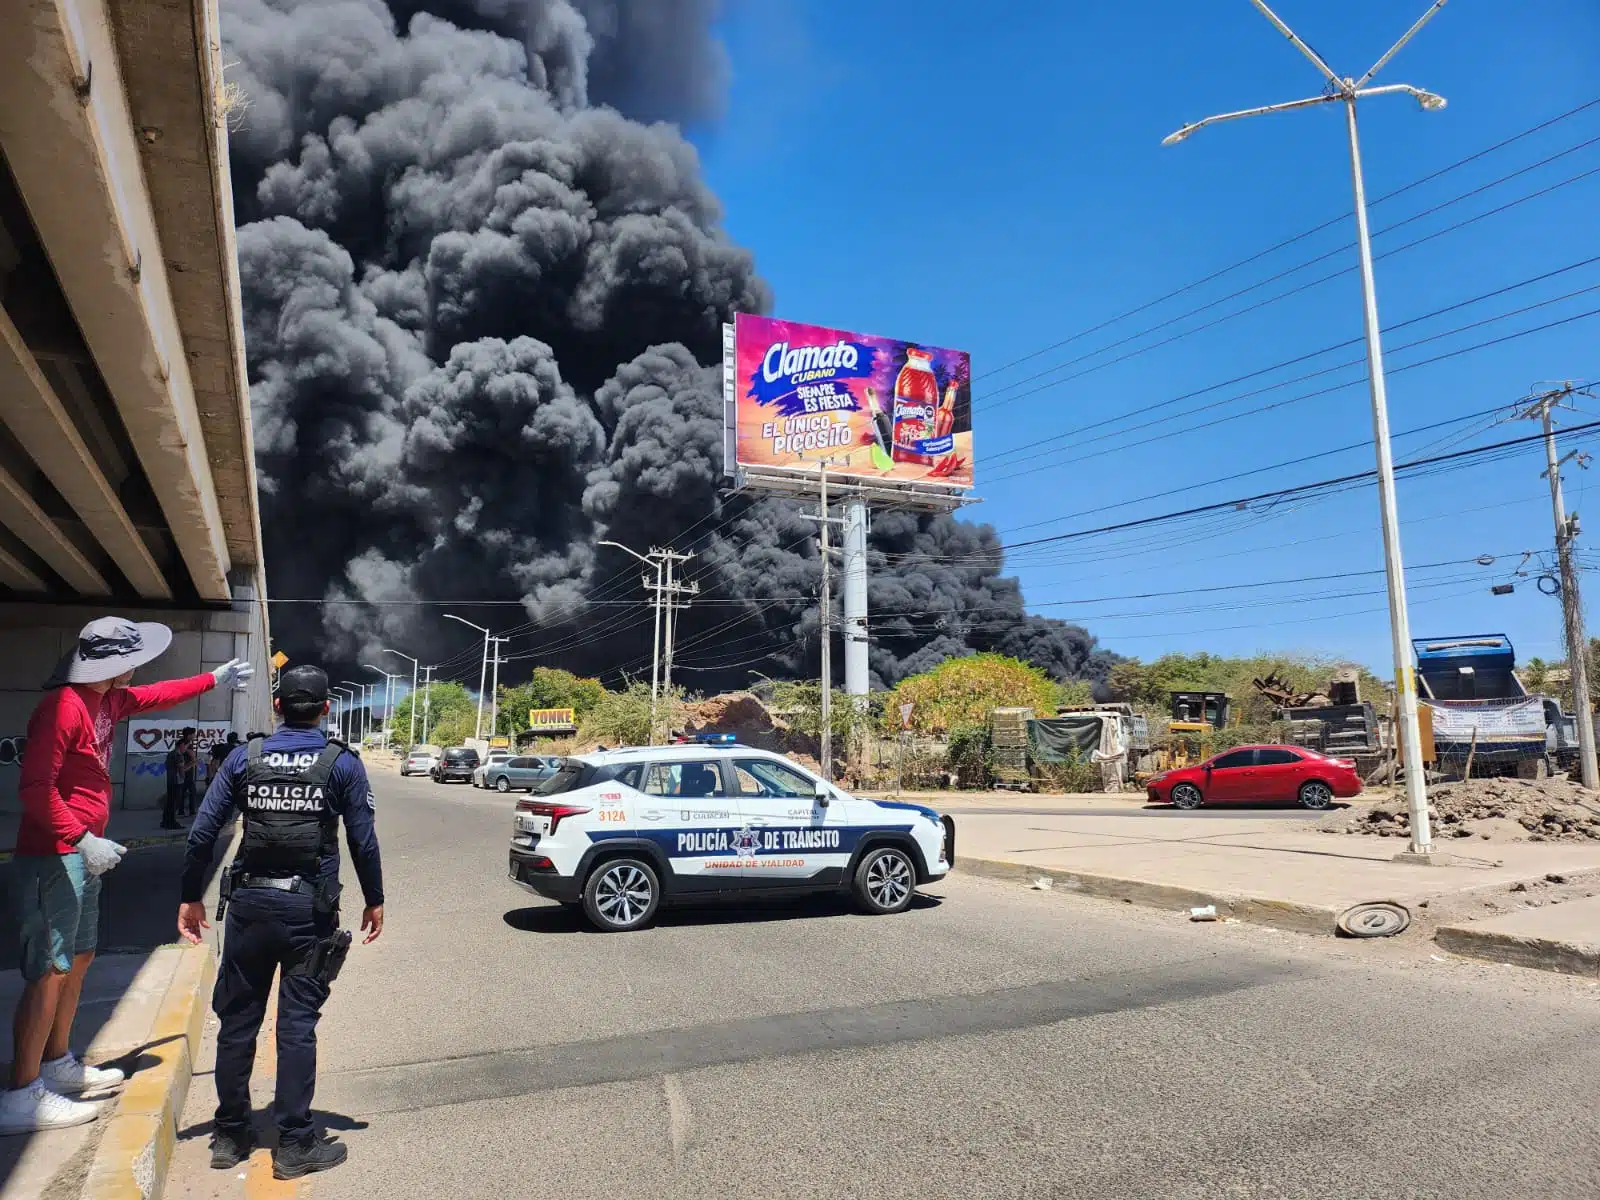 Elementos de la Policía Municipal y Estatal, Tránsito, Protección Civil y paramédicos en el lugar donde se registra el intenso incendio